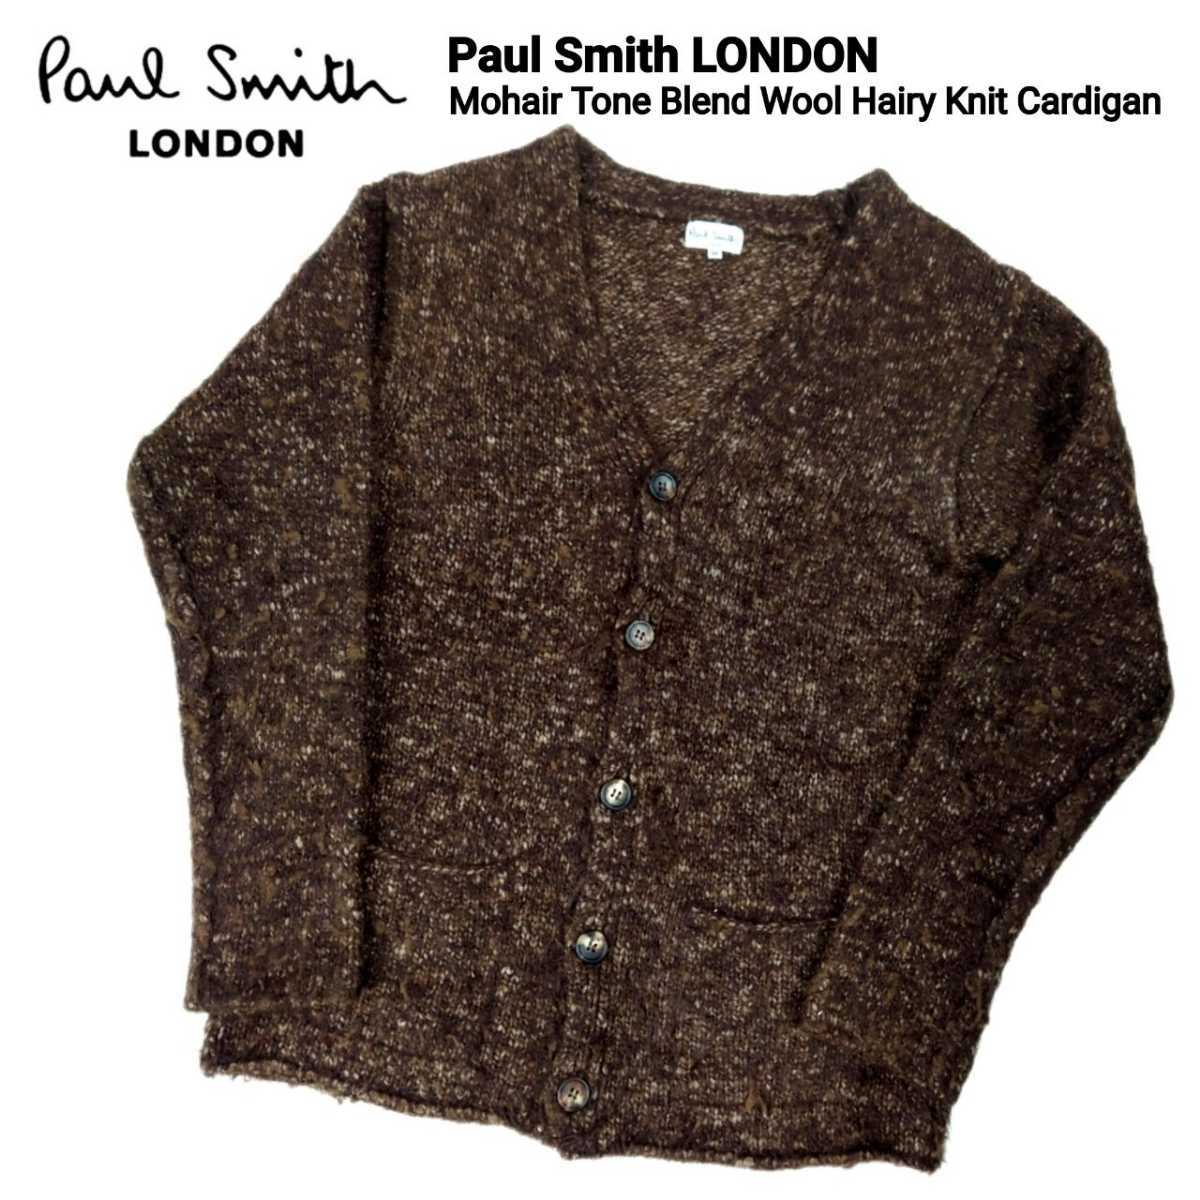 超稀少 Paul Smith LONDON ポールスミスロンドン 正規品 最高級モヘア調ブレンドウールヘアリーニットカーディガン M 美品 カートコバーン